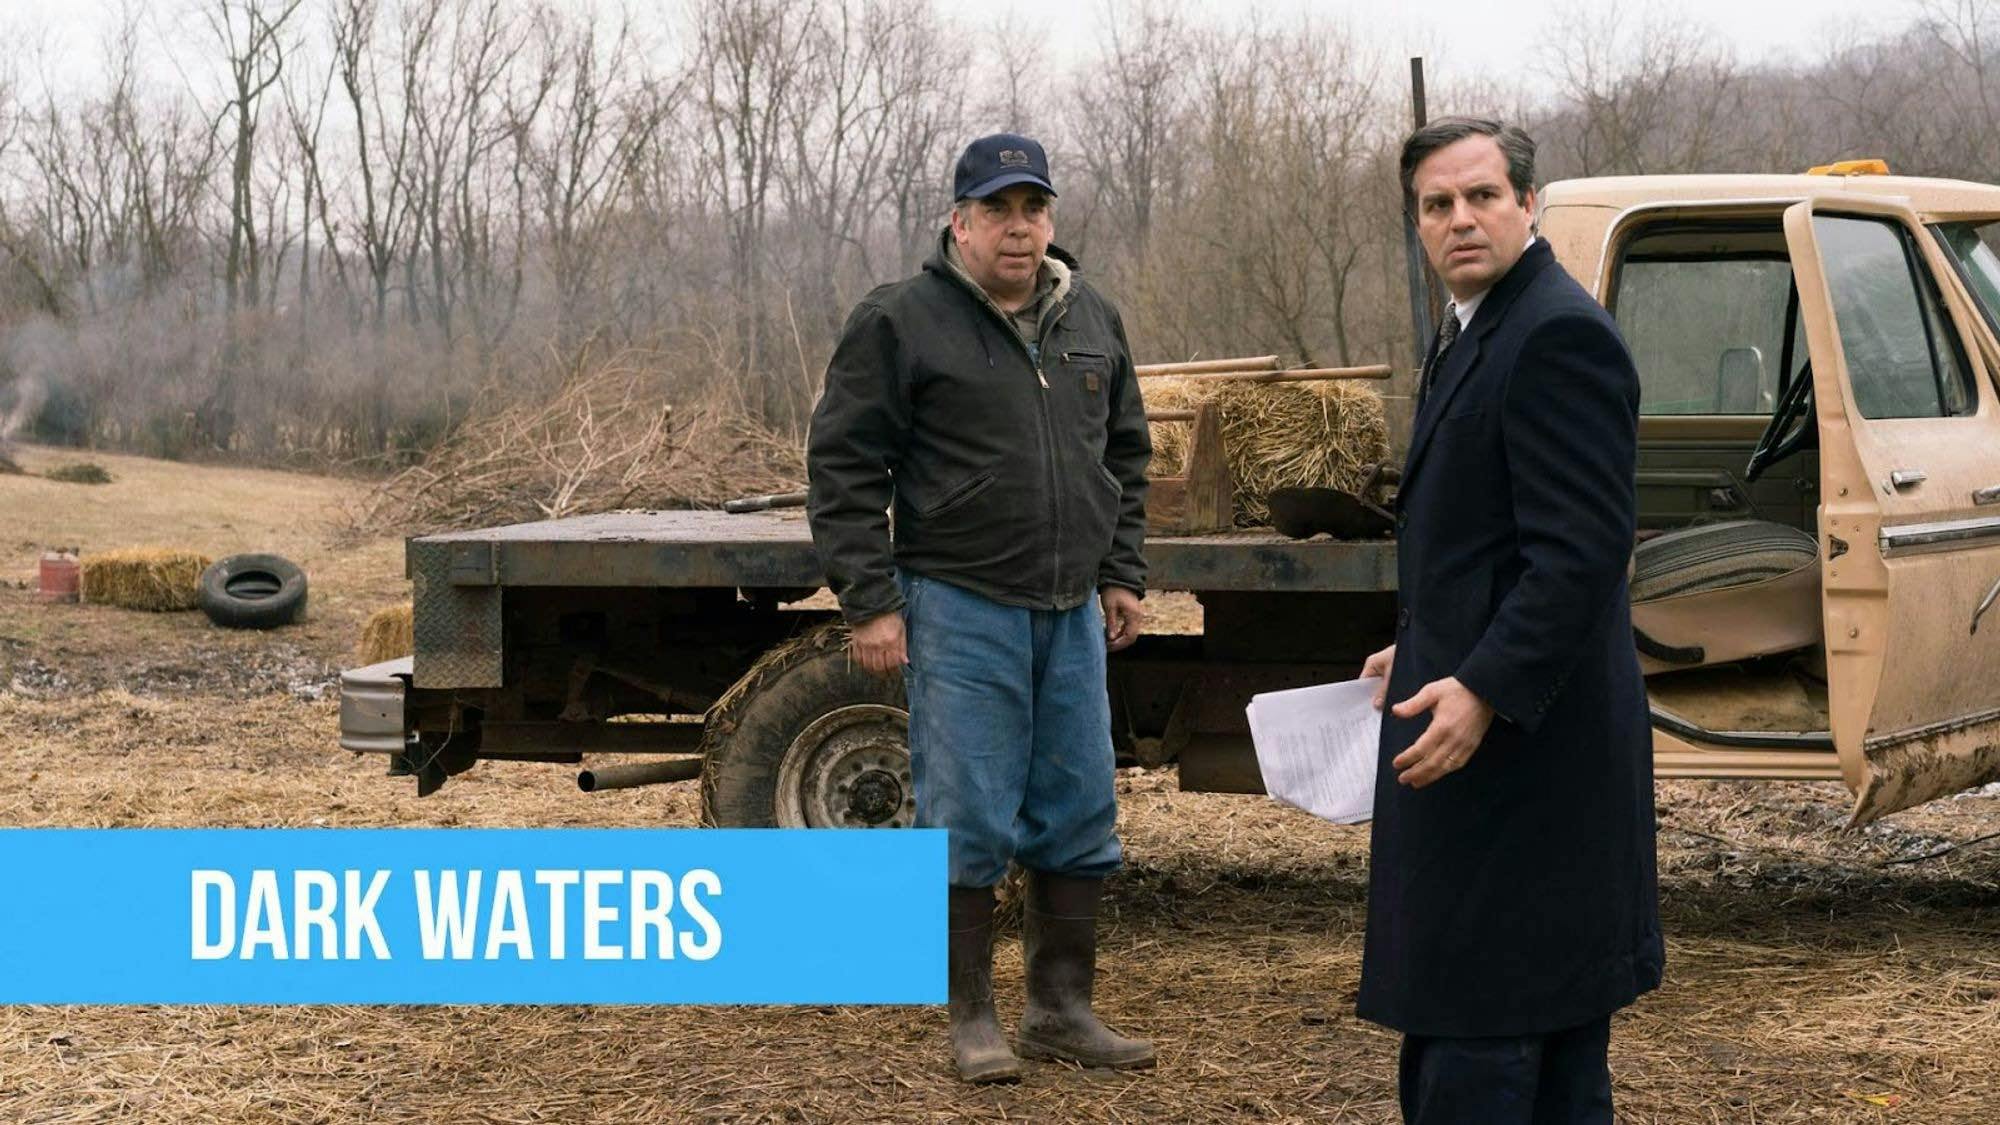 poster du film Dark waters avec les deux acteurs principaux avec un titre sur fond bleu